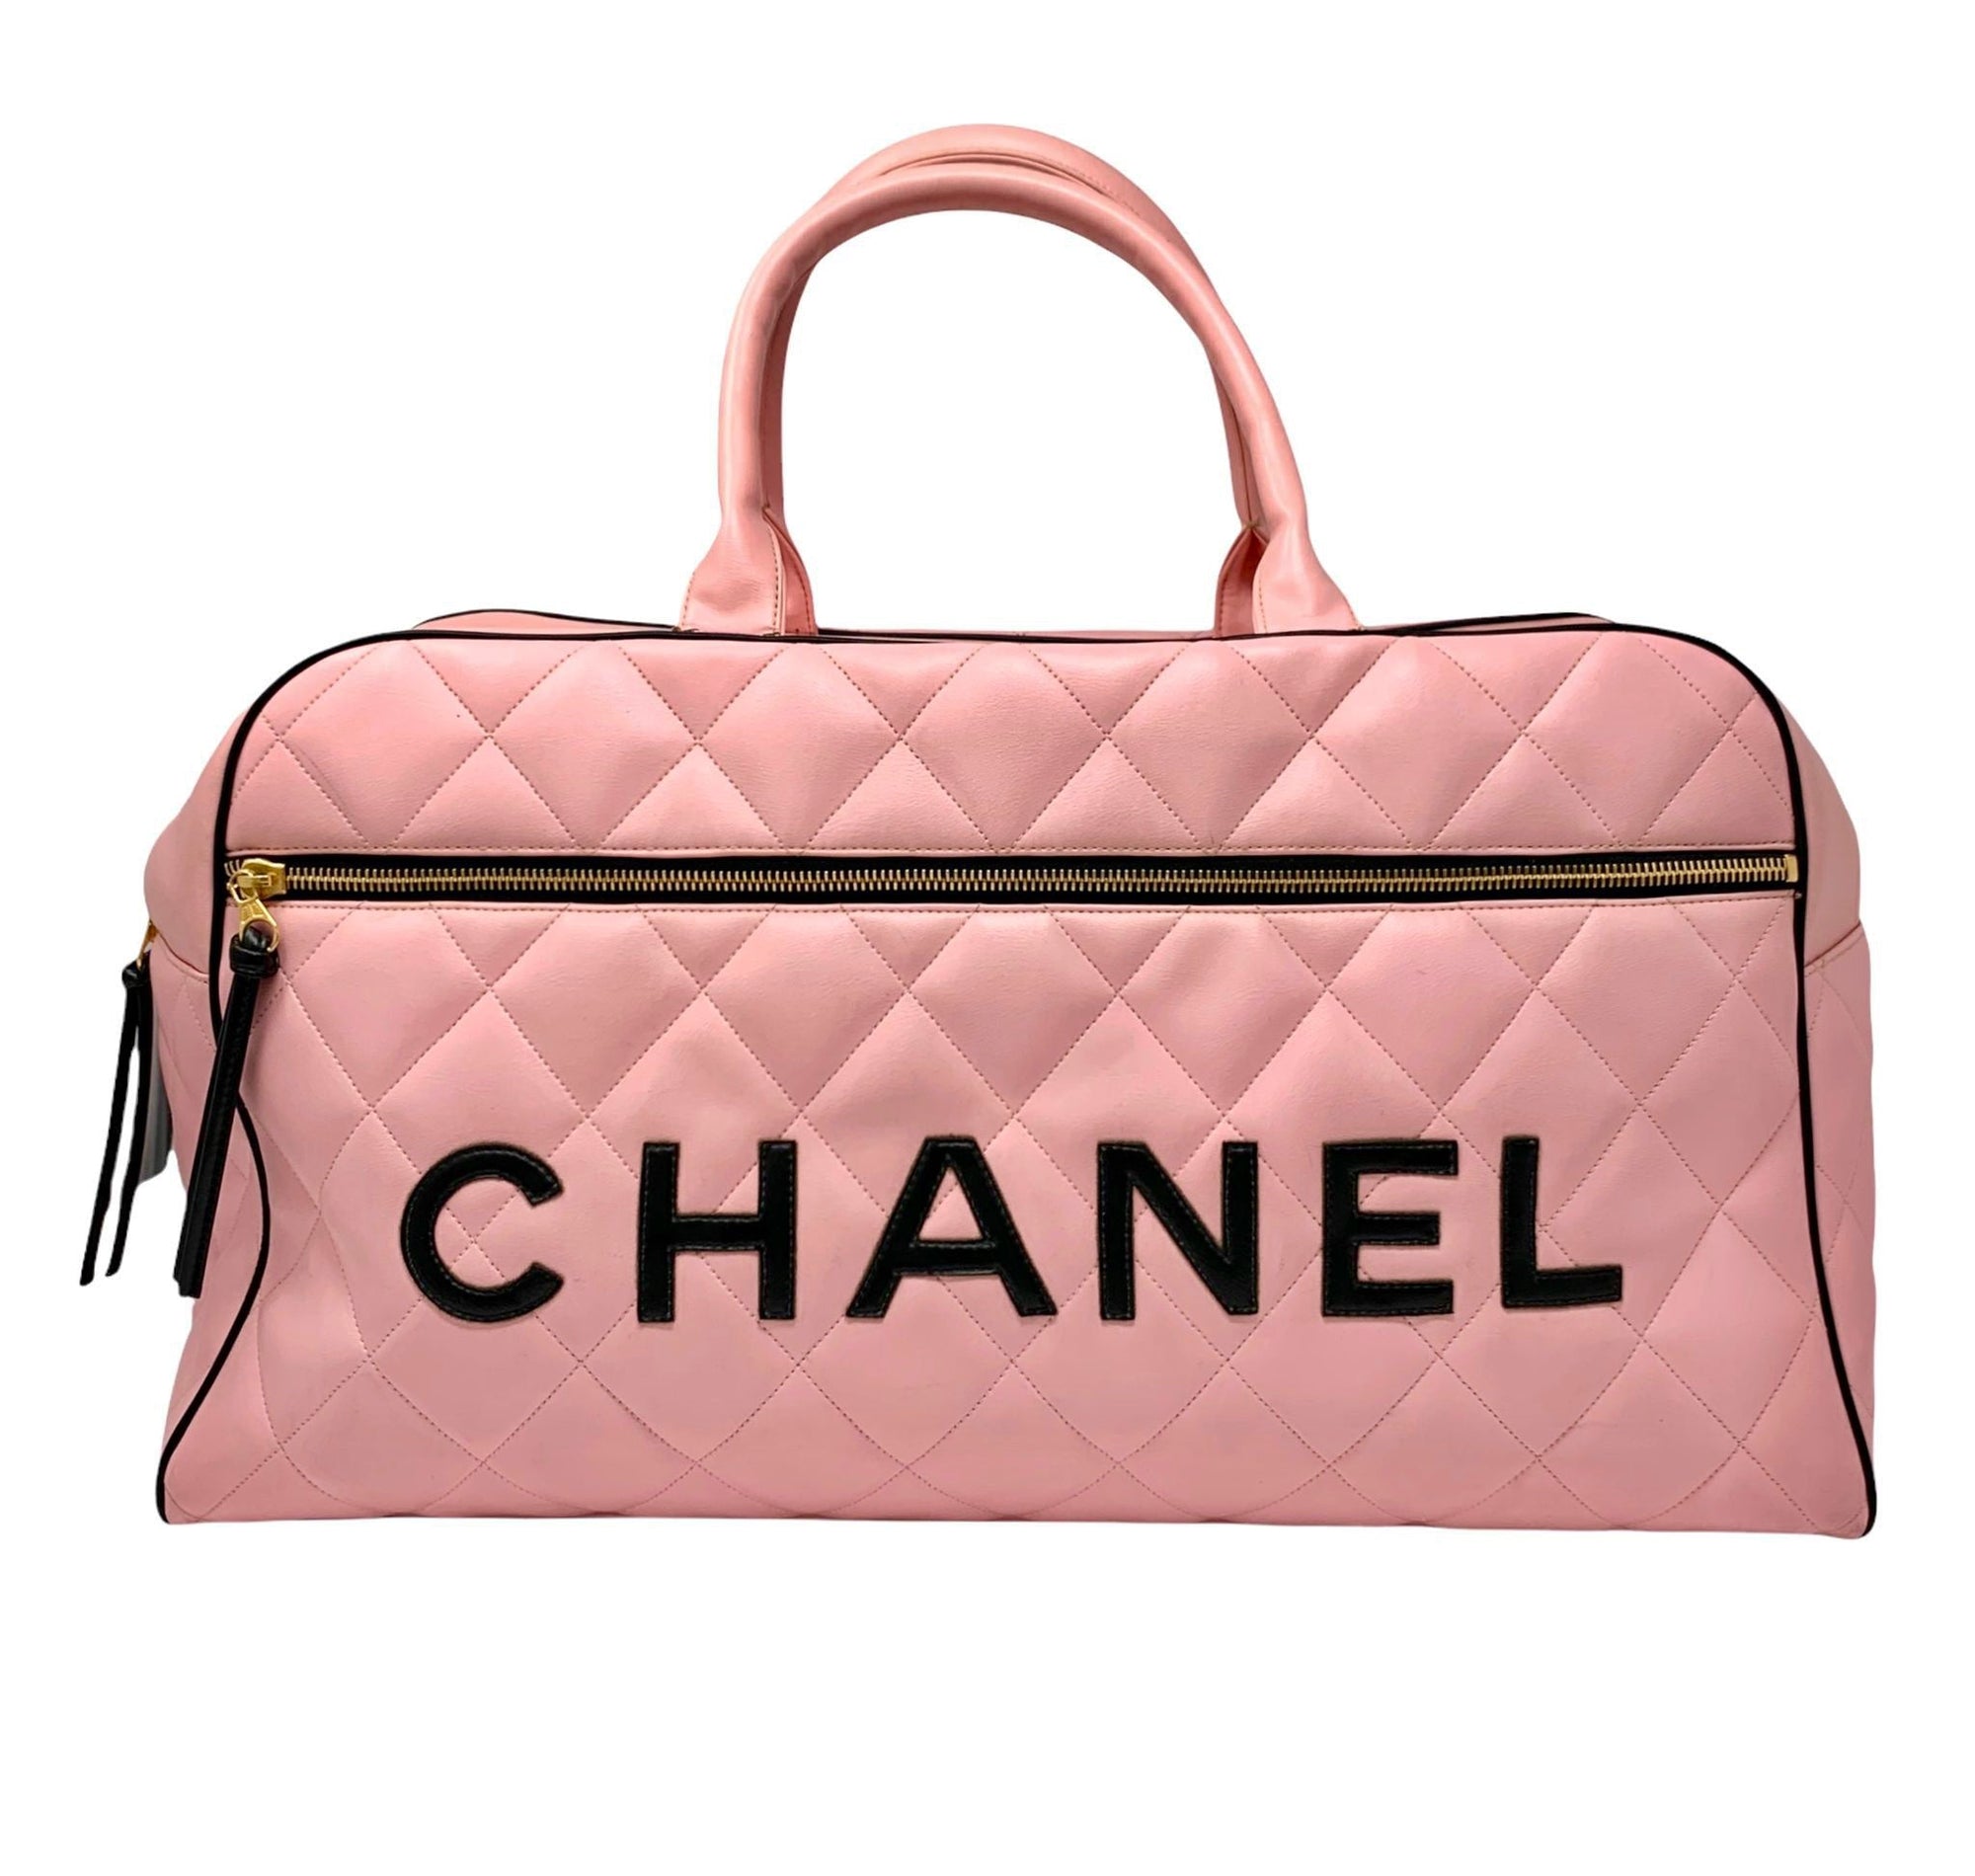 Supreme Duffle Bag (SS22) Pink - SS22 - US